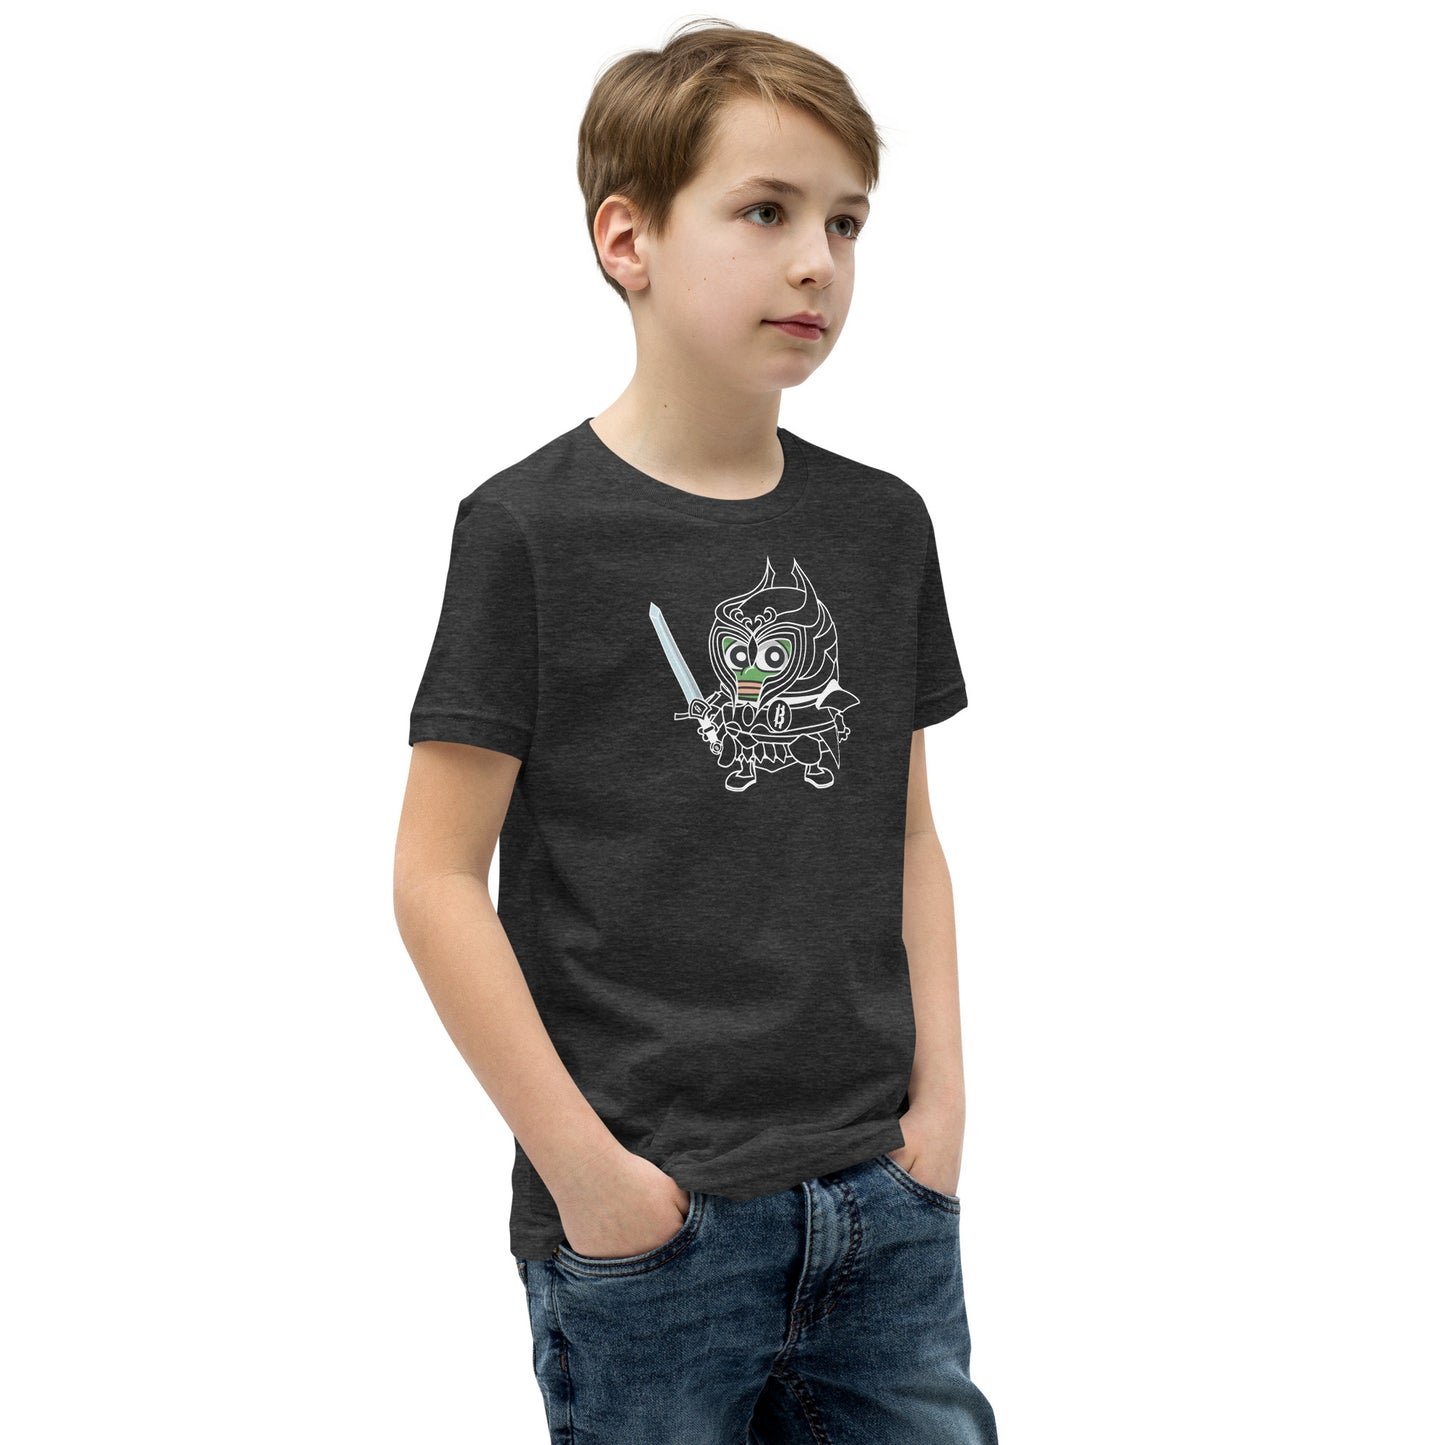 Bitcoiner in Training Kids Tshirt